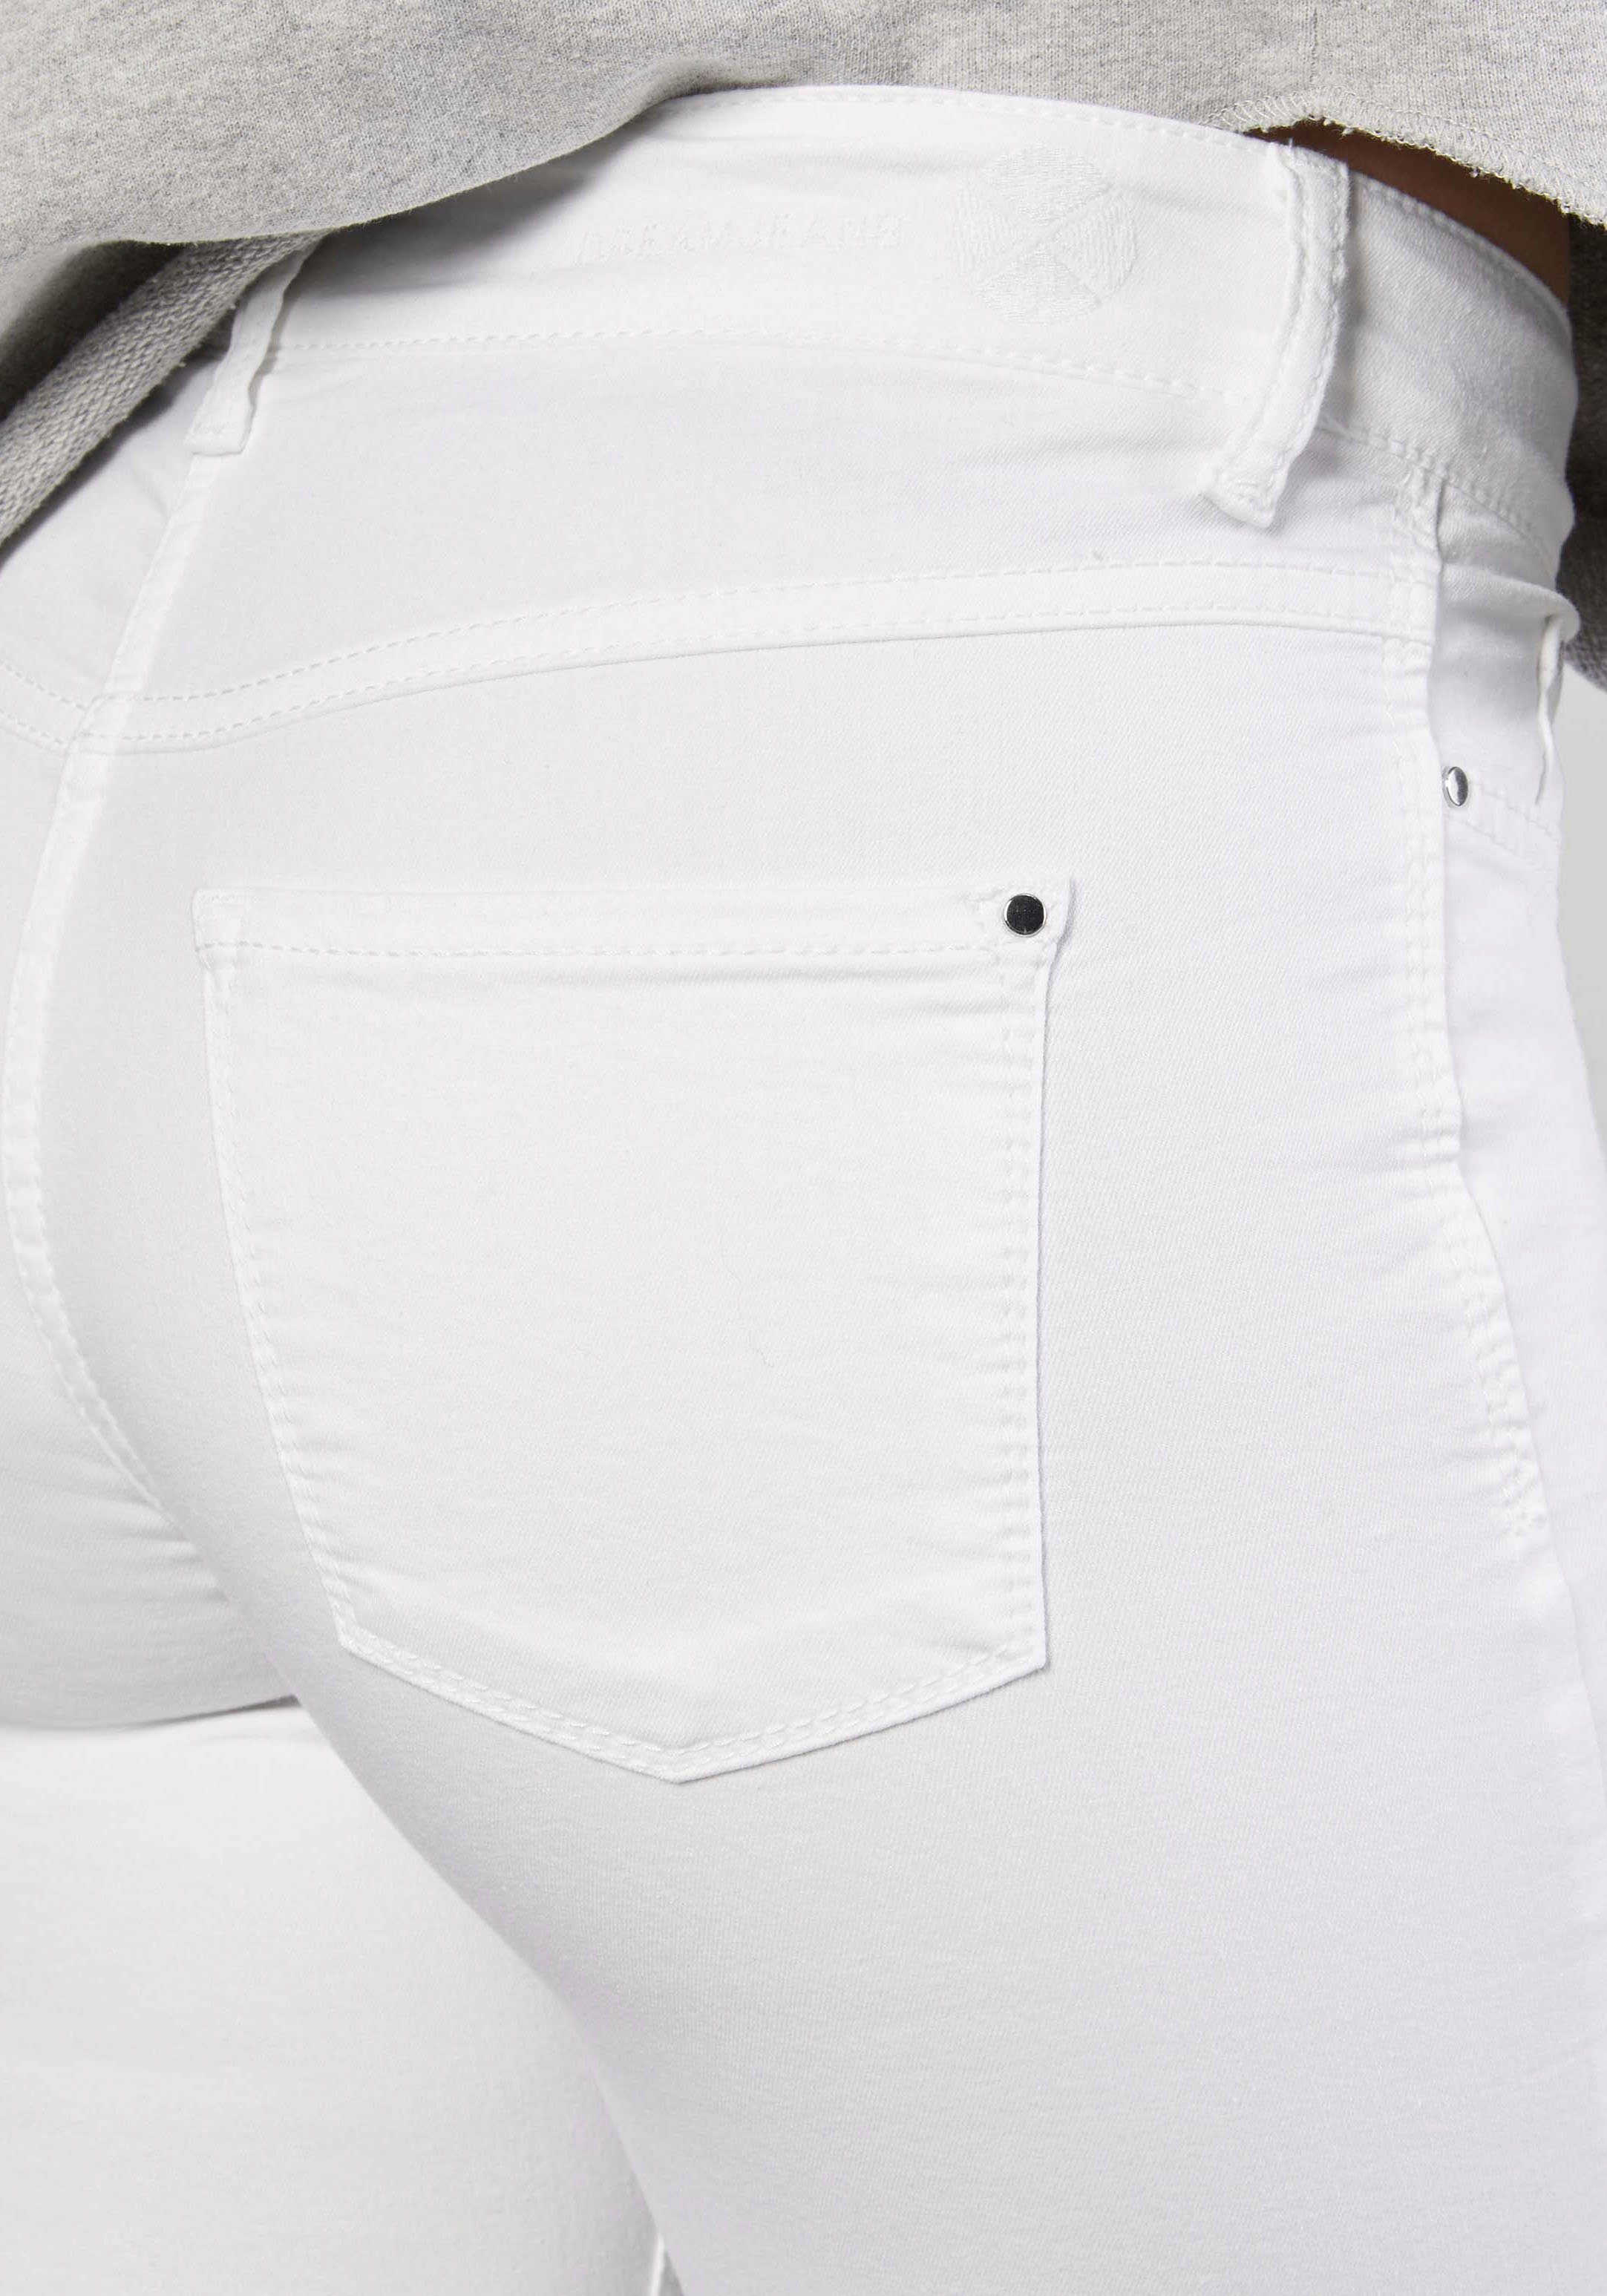 Skinny Sitz sorgt den perfekten Qualität Dream für whitedenim Skinny-fit-Jeans Hochelastische MAC